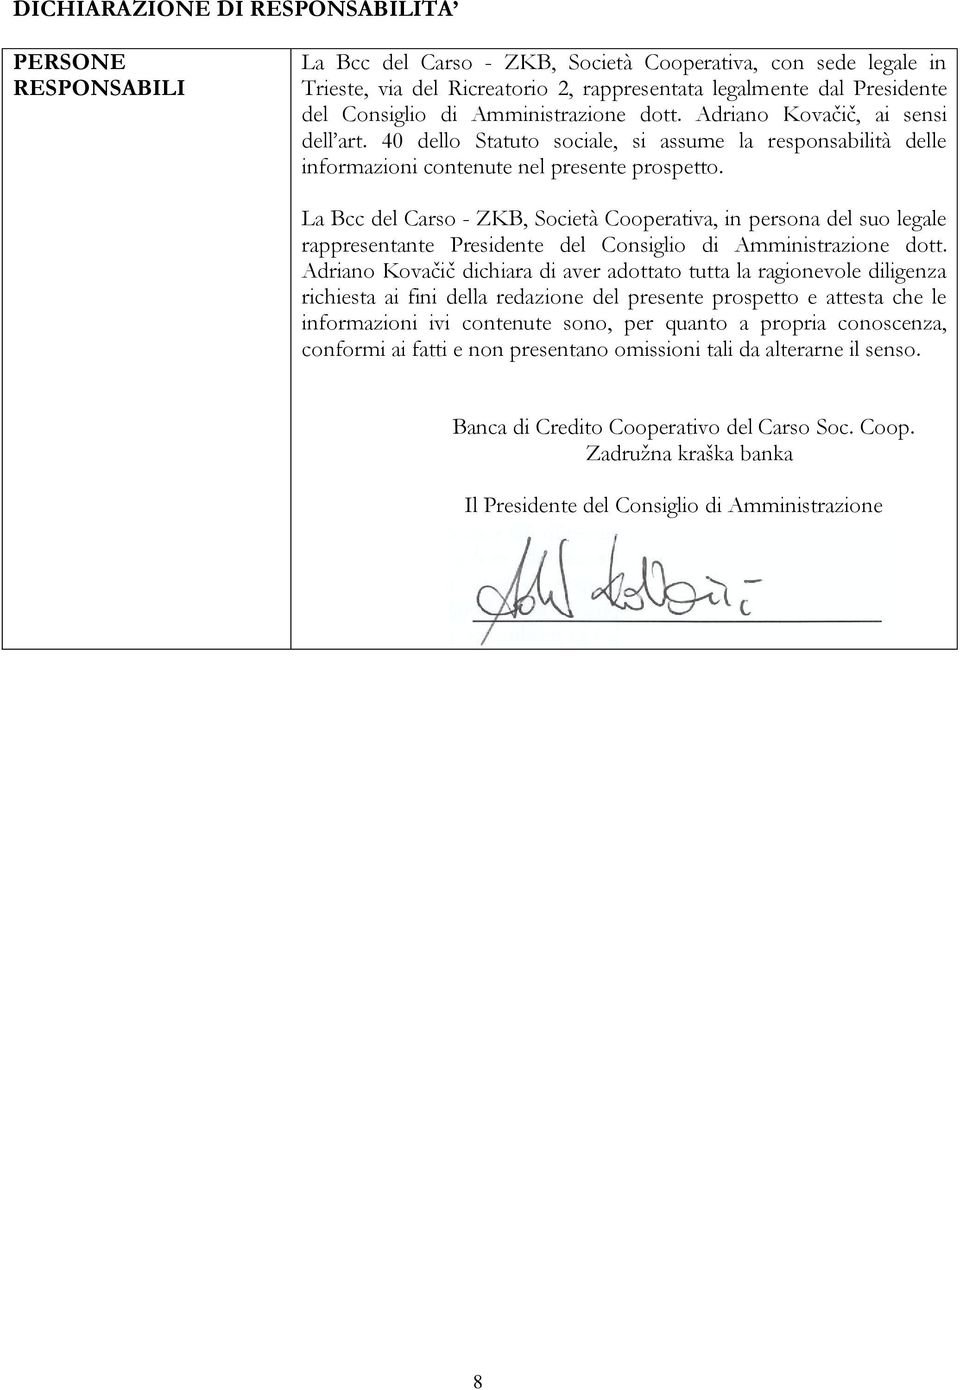 La Bcc del Carso - ZKB, Società Cooperativa, in persona del suo legale rappresentante Presidente del Consiglio di Amministrazione dott.